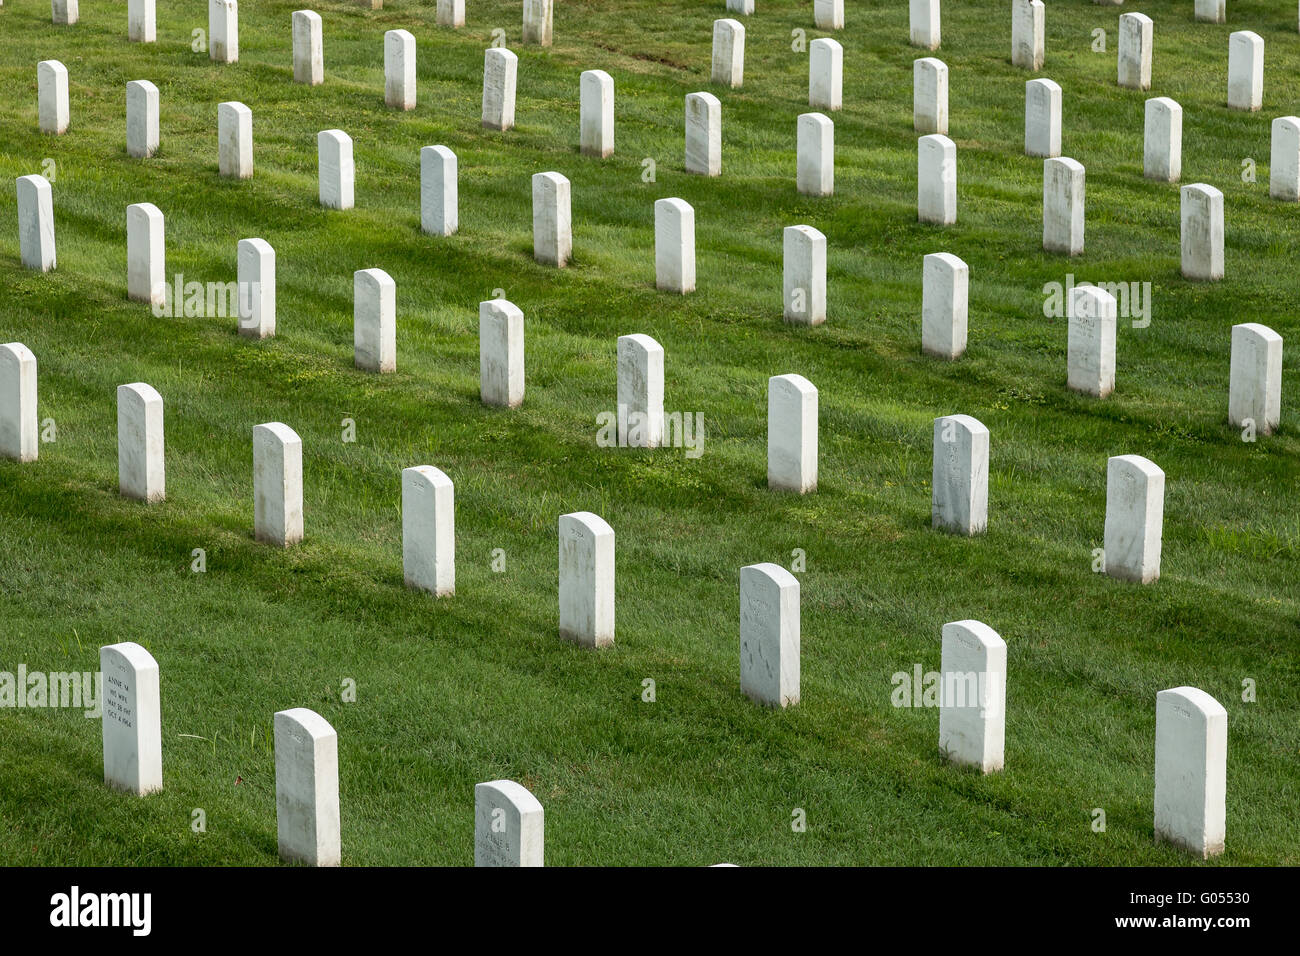 Les rangées de pierres tombales blanches marquant des tombes dans le cimetière national d'Arlington, près de washington dc. Banque D'Images